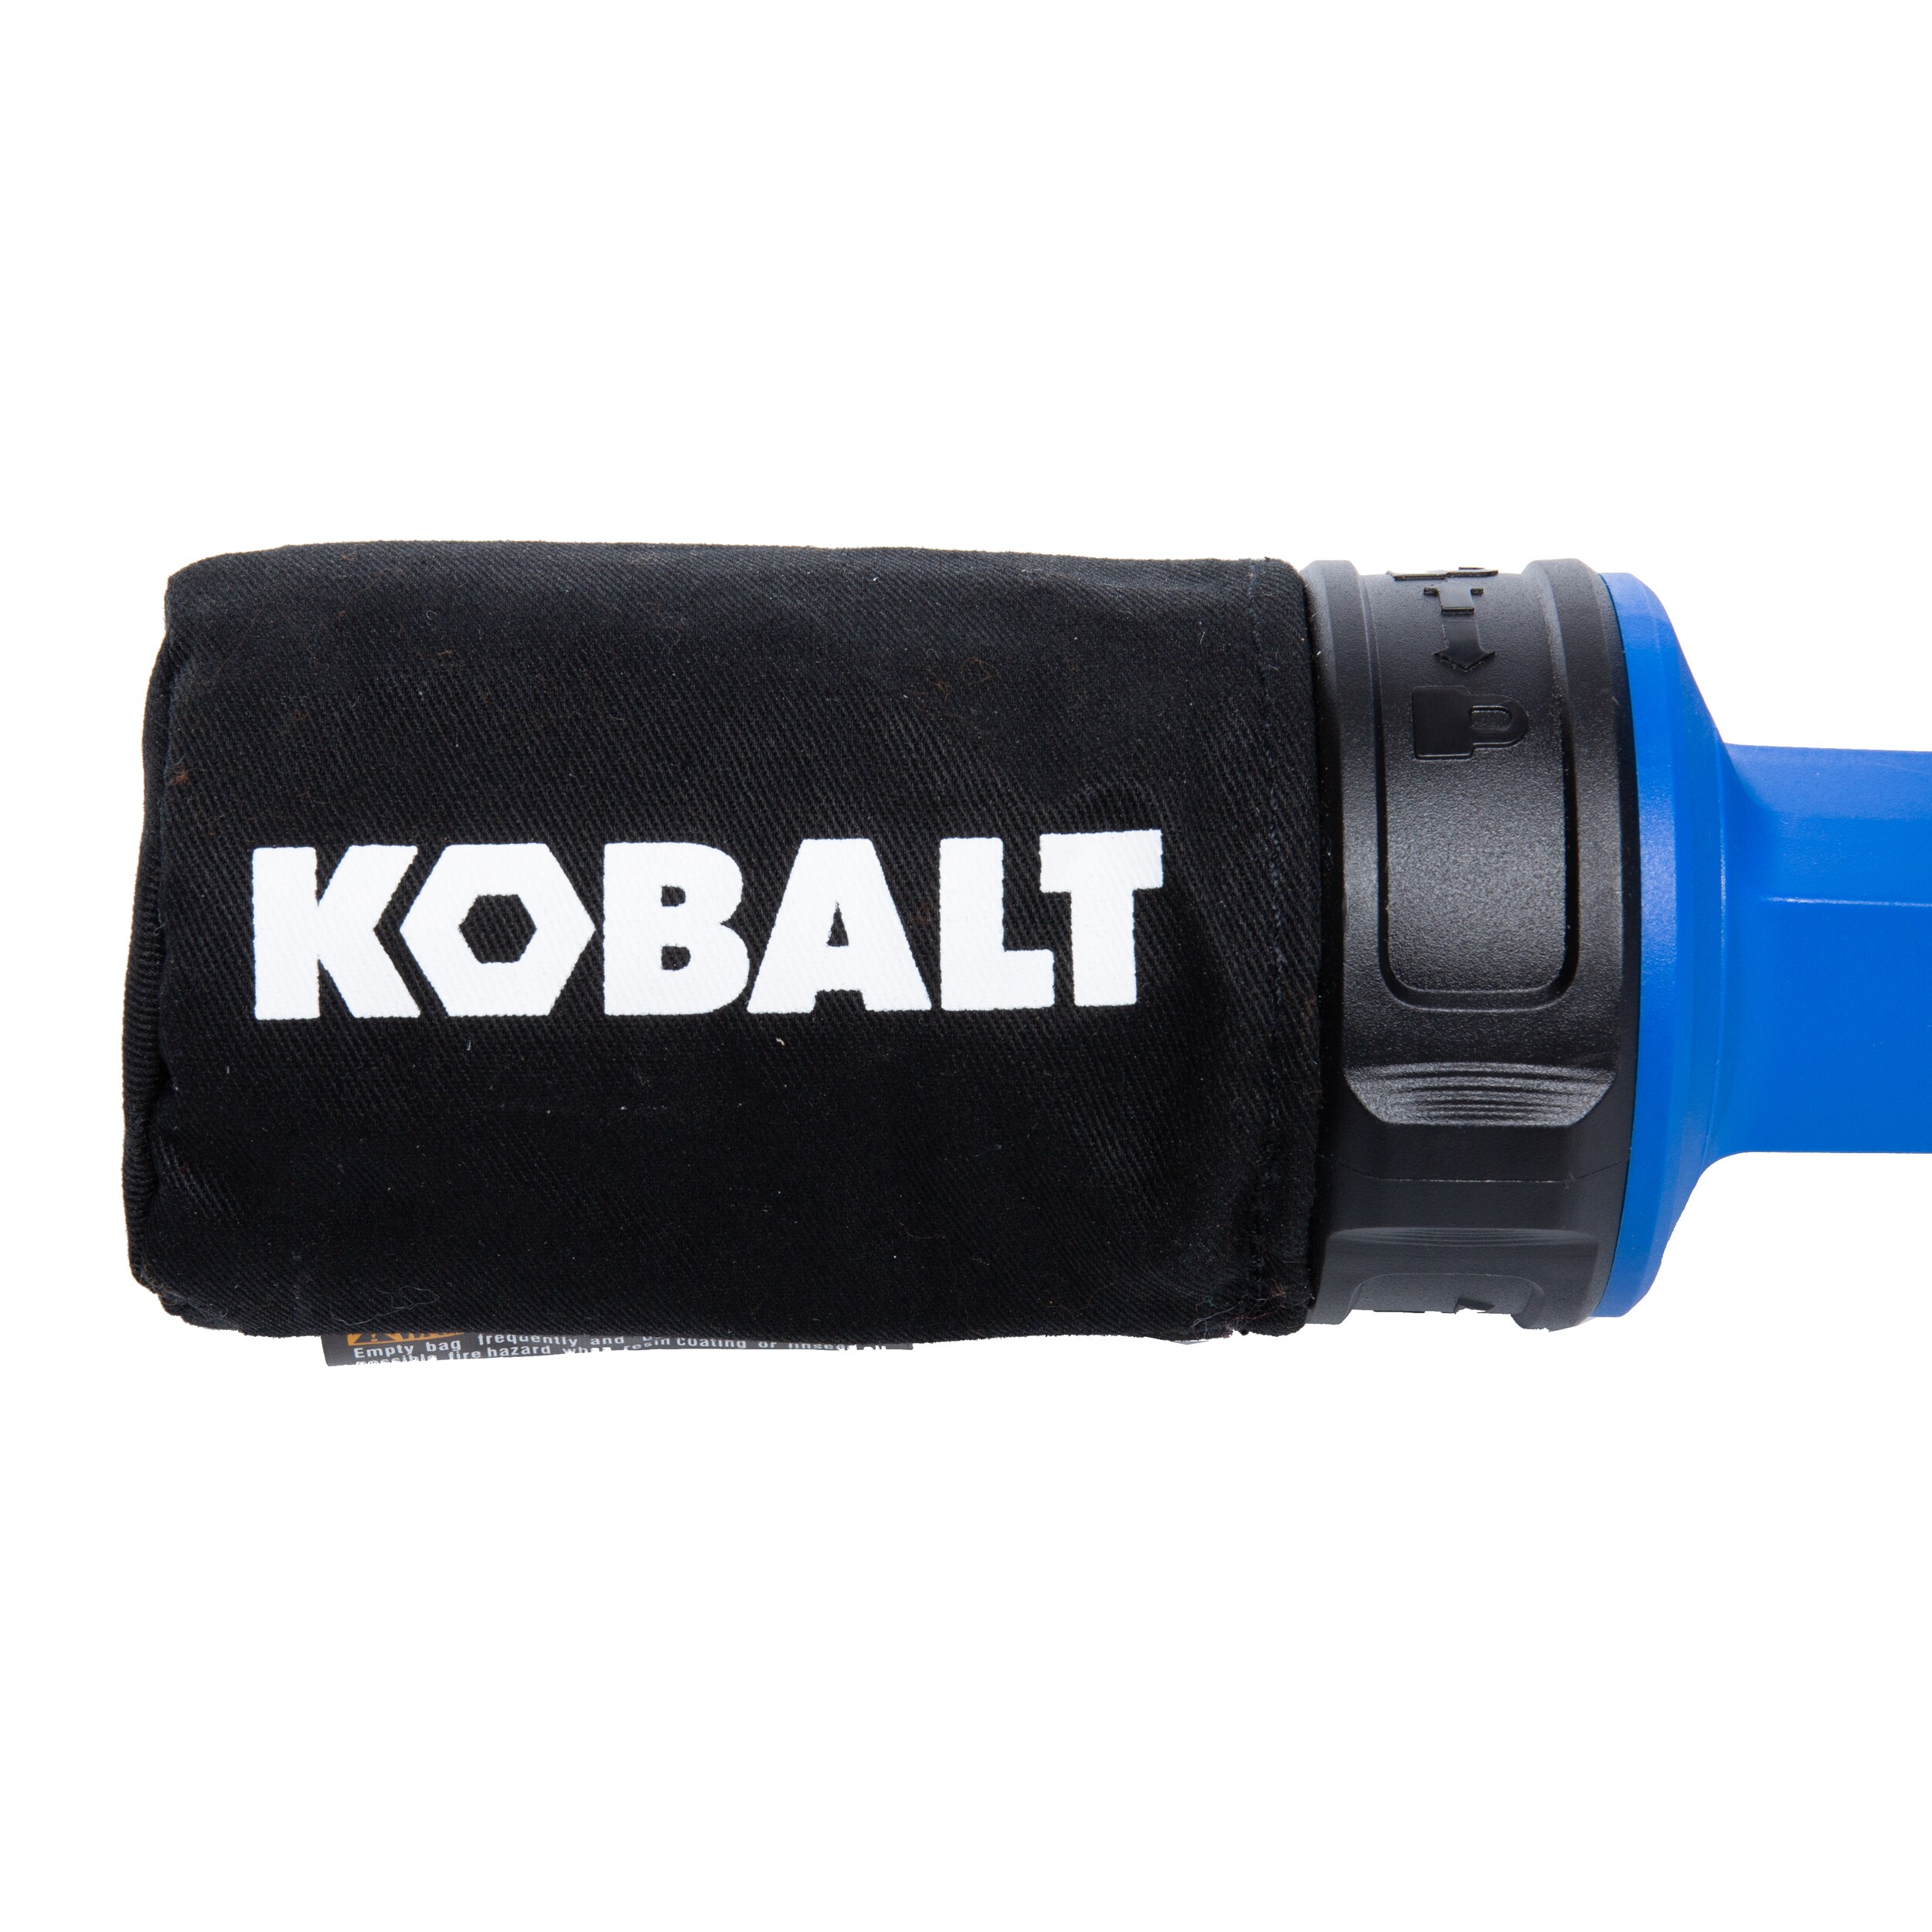 Kobalt Power Sanders #KOS 2450B-03 - 8